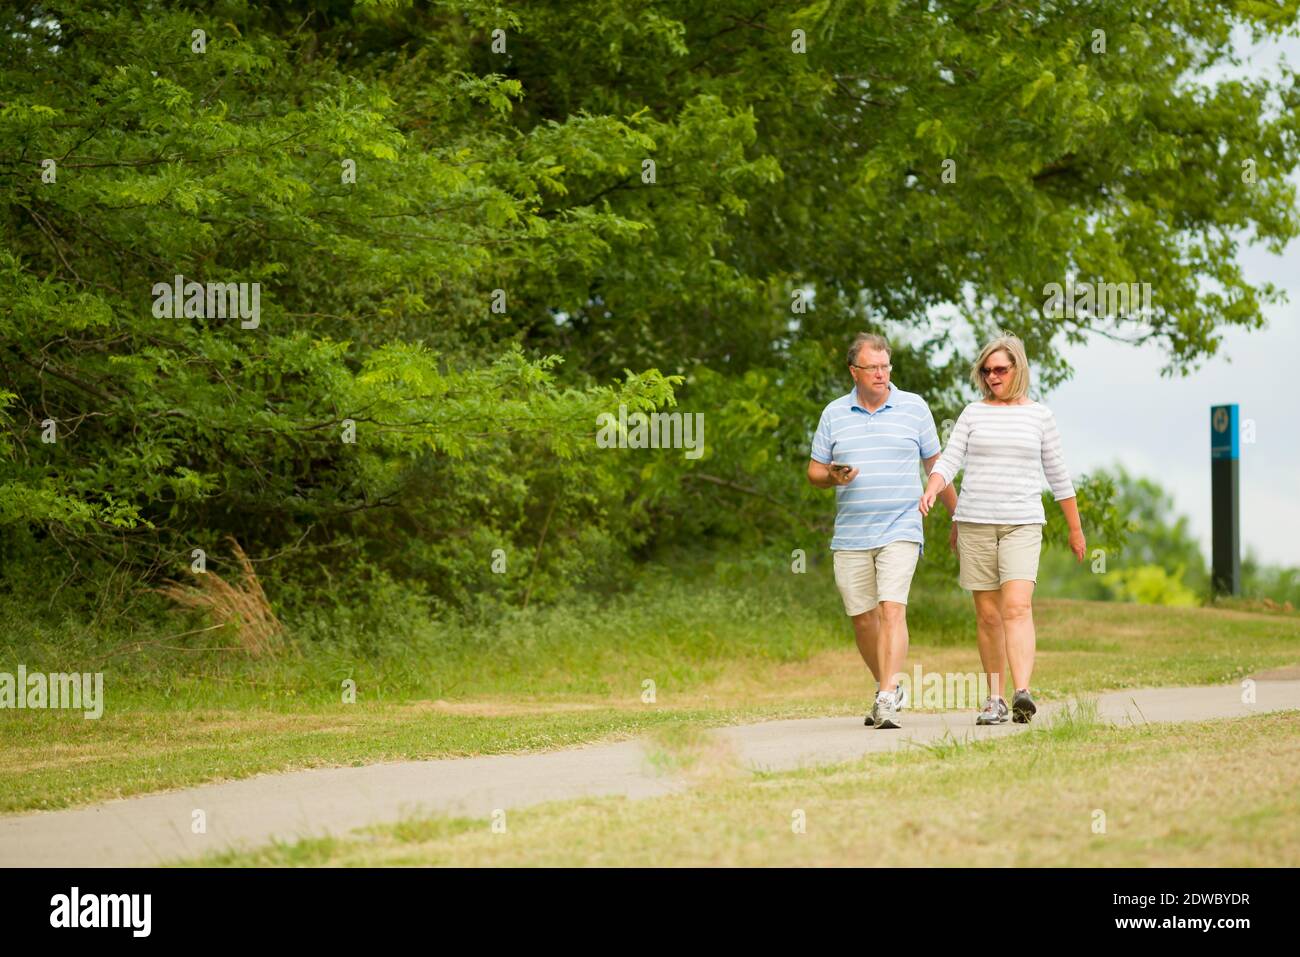 Aktives reifes Paar, das auf dem Pfad bei Shelby Farms läuft Park in der Nähe von Memphis Tennessee Stockfoto